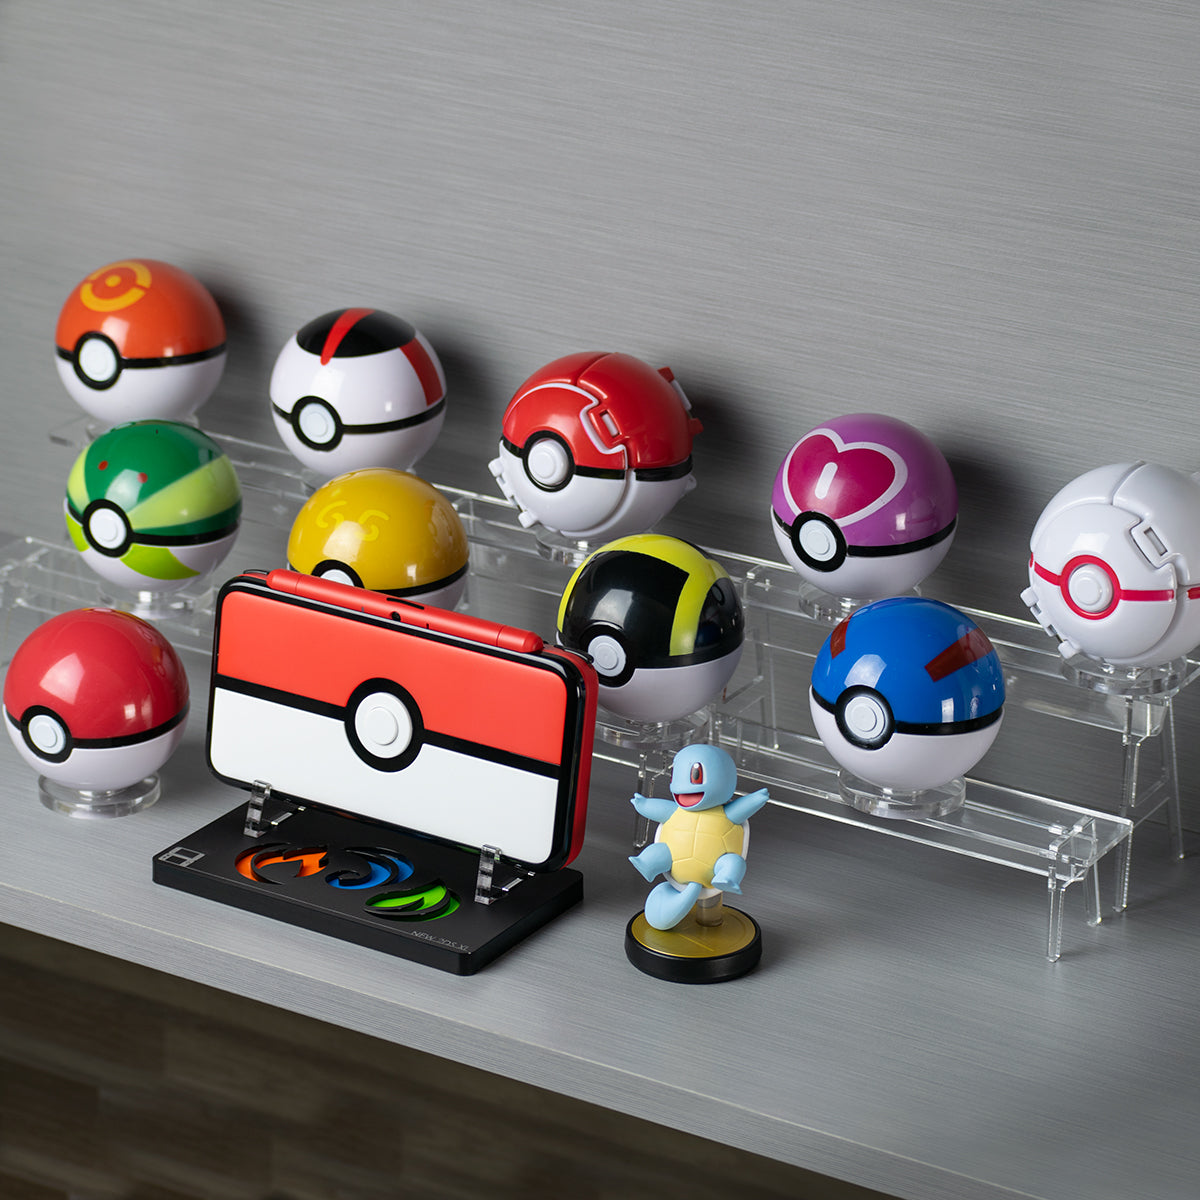 Pokémon Poké Ball Edition New Nintendo XL Display Rose